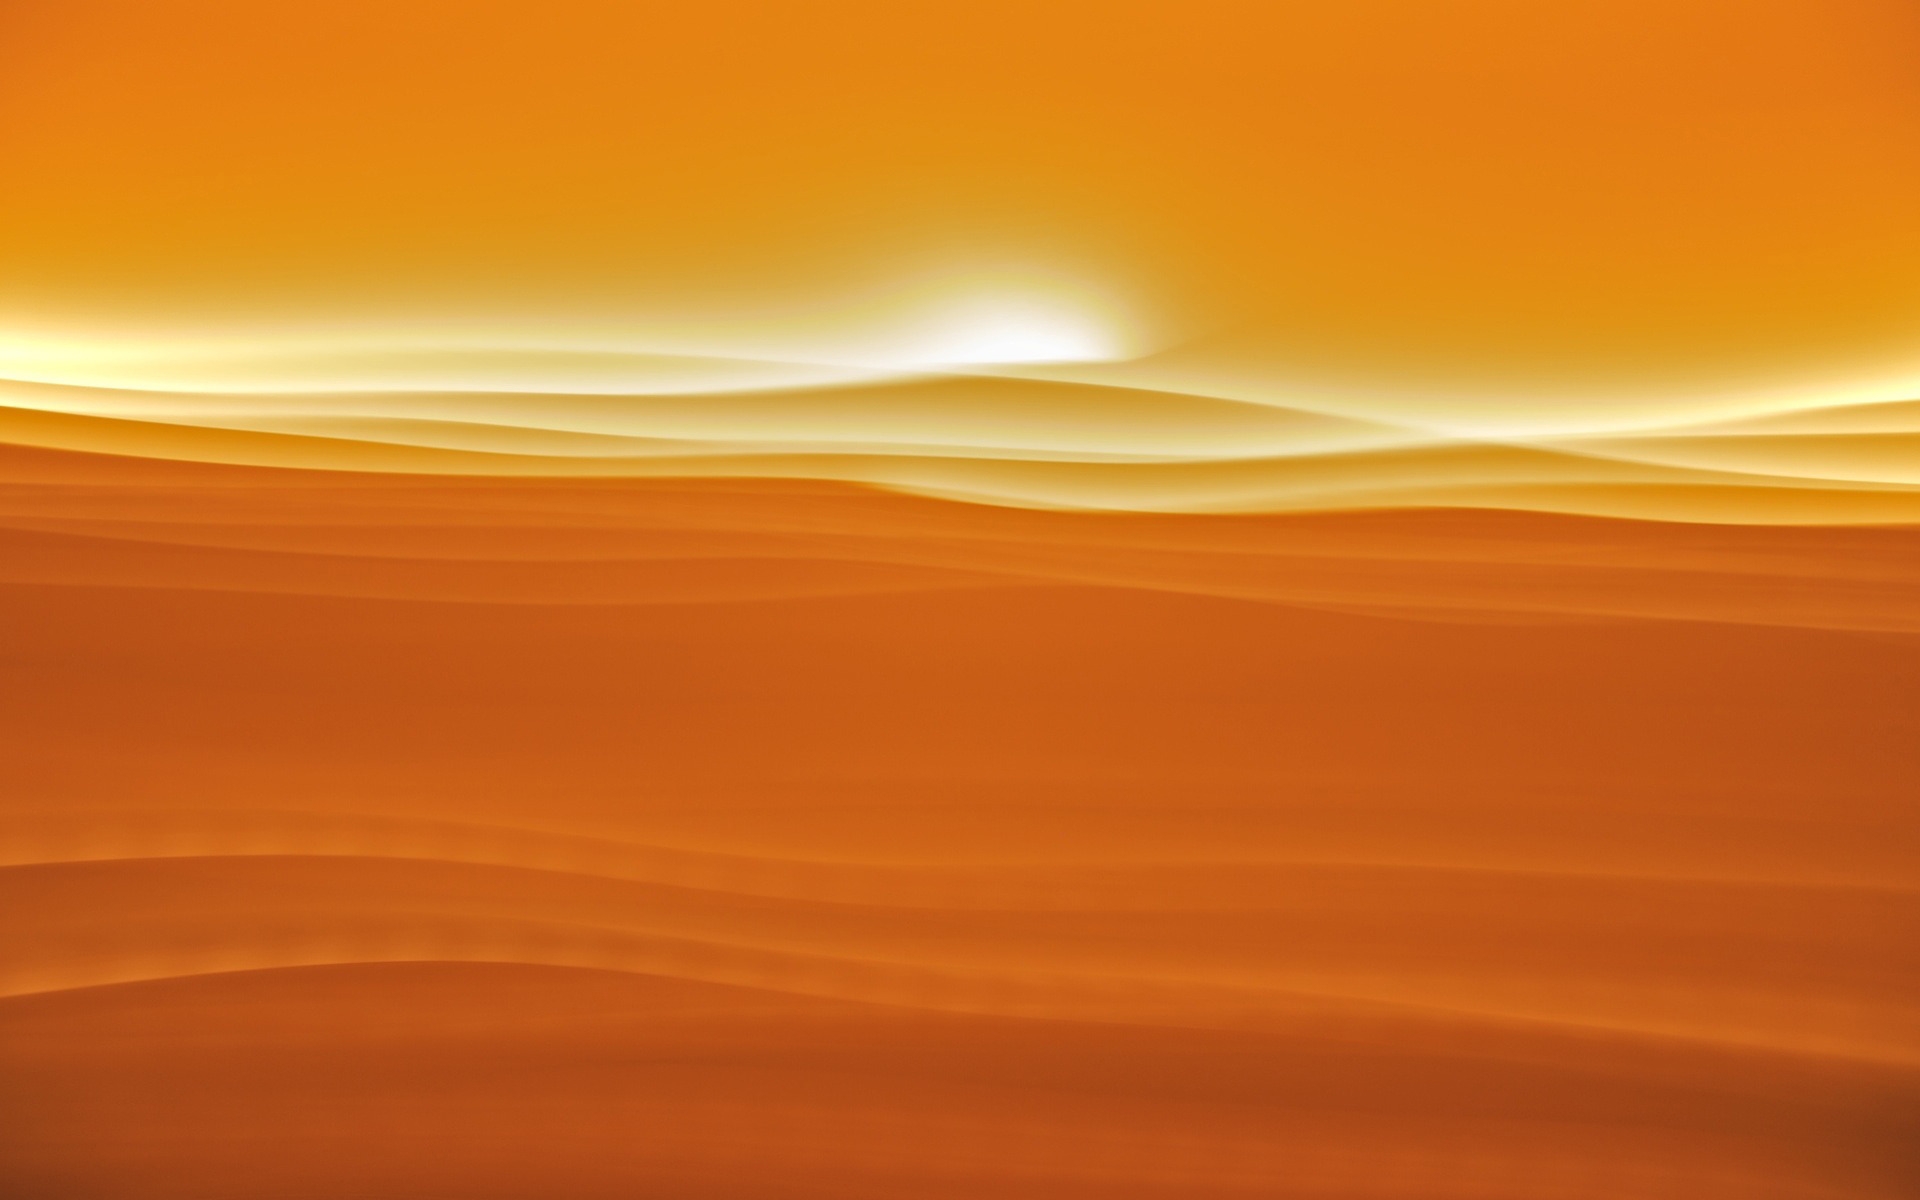 Desert sunlight for 1920 x 1200 widescreen resolution